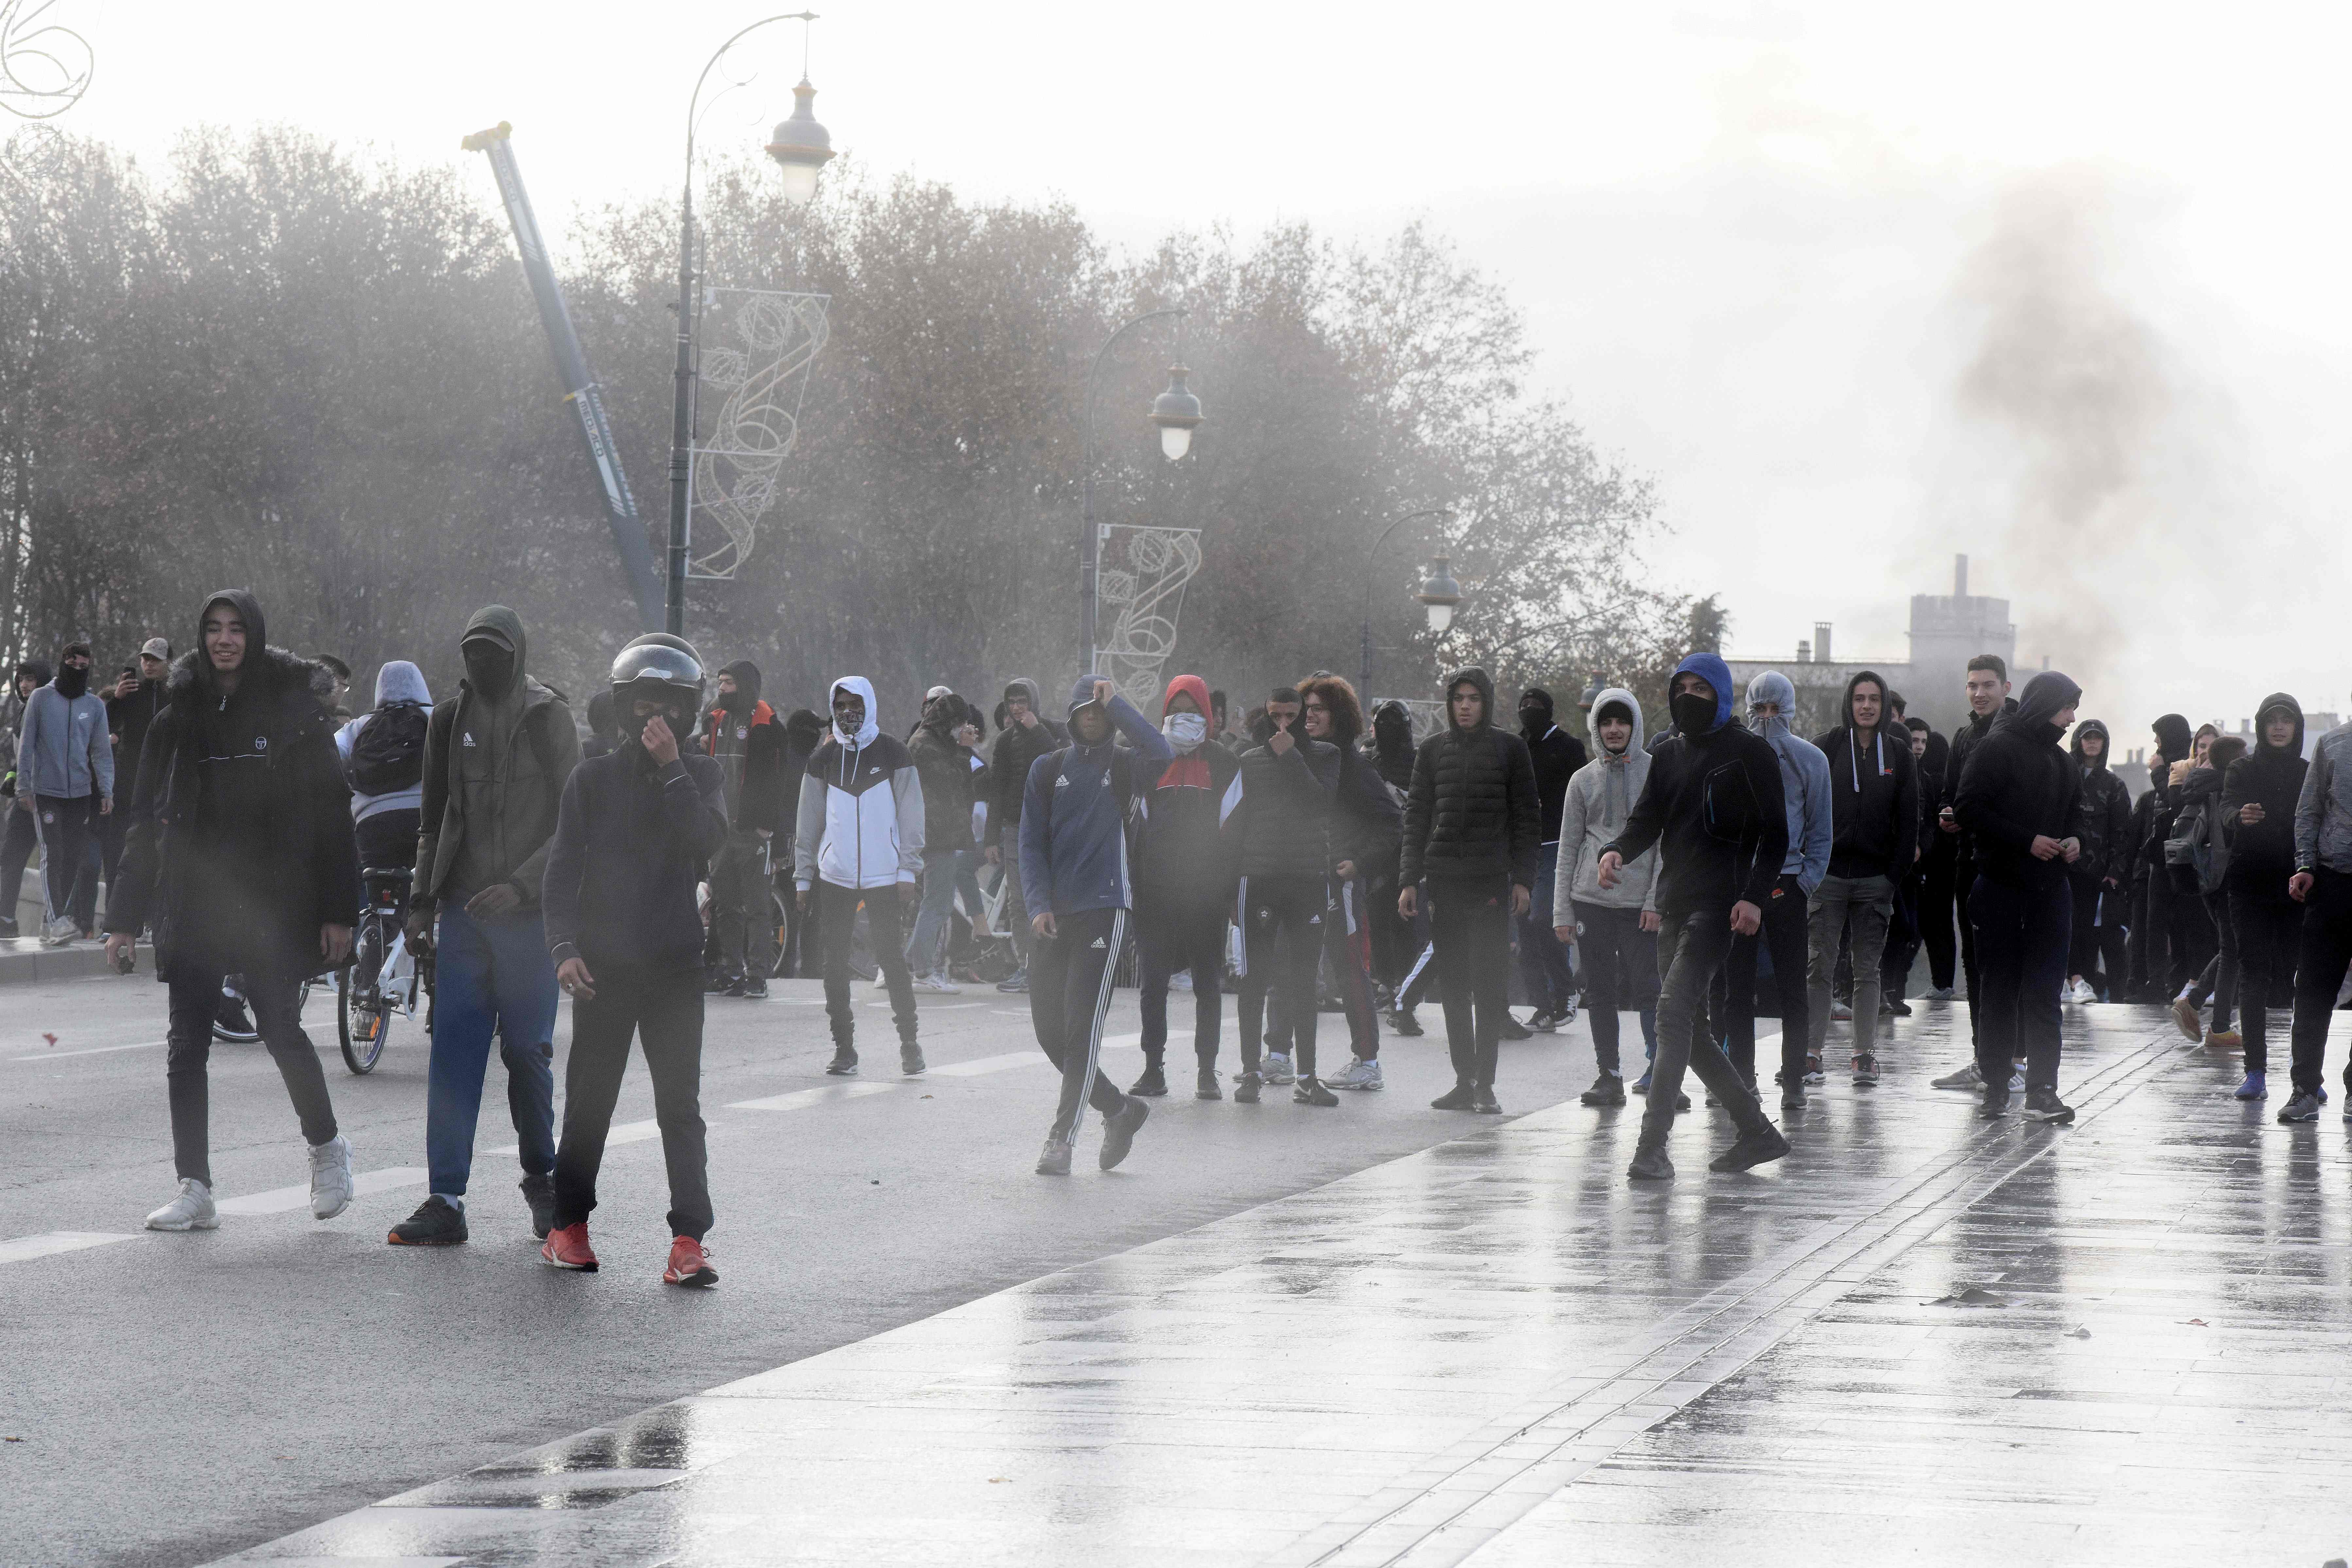 6일(현지시간) 프랑스 남부 툴루즈에서 고교생들이 대입제도 개편에 항의, 시위하면서 경찰과 대치하고 있다. 이날 프랑스 파리, 릴, 오를레앙, 니스, 마르세유 등의 도시에서는 정부의 대입제도 개편에 항의하는 고교생들의 거리 시위가 벌어져 학교 200여 곳이 폐쇄됐다. AP 연합뉴스